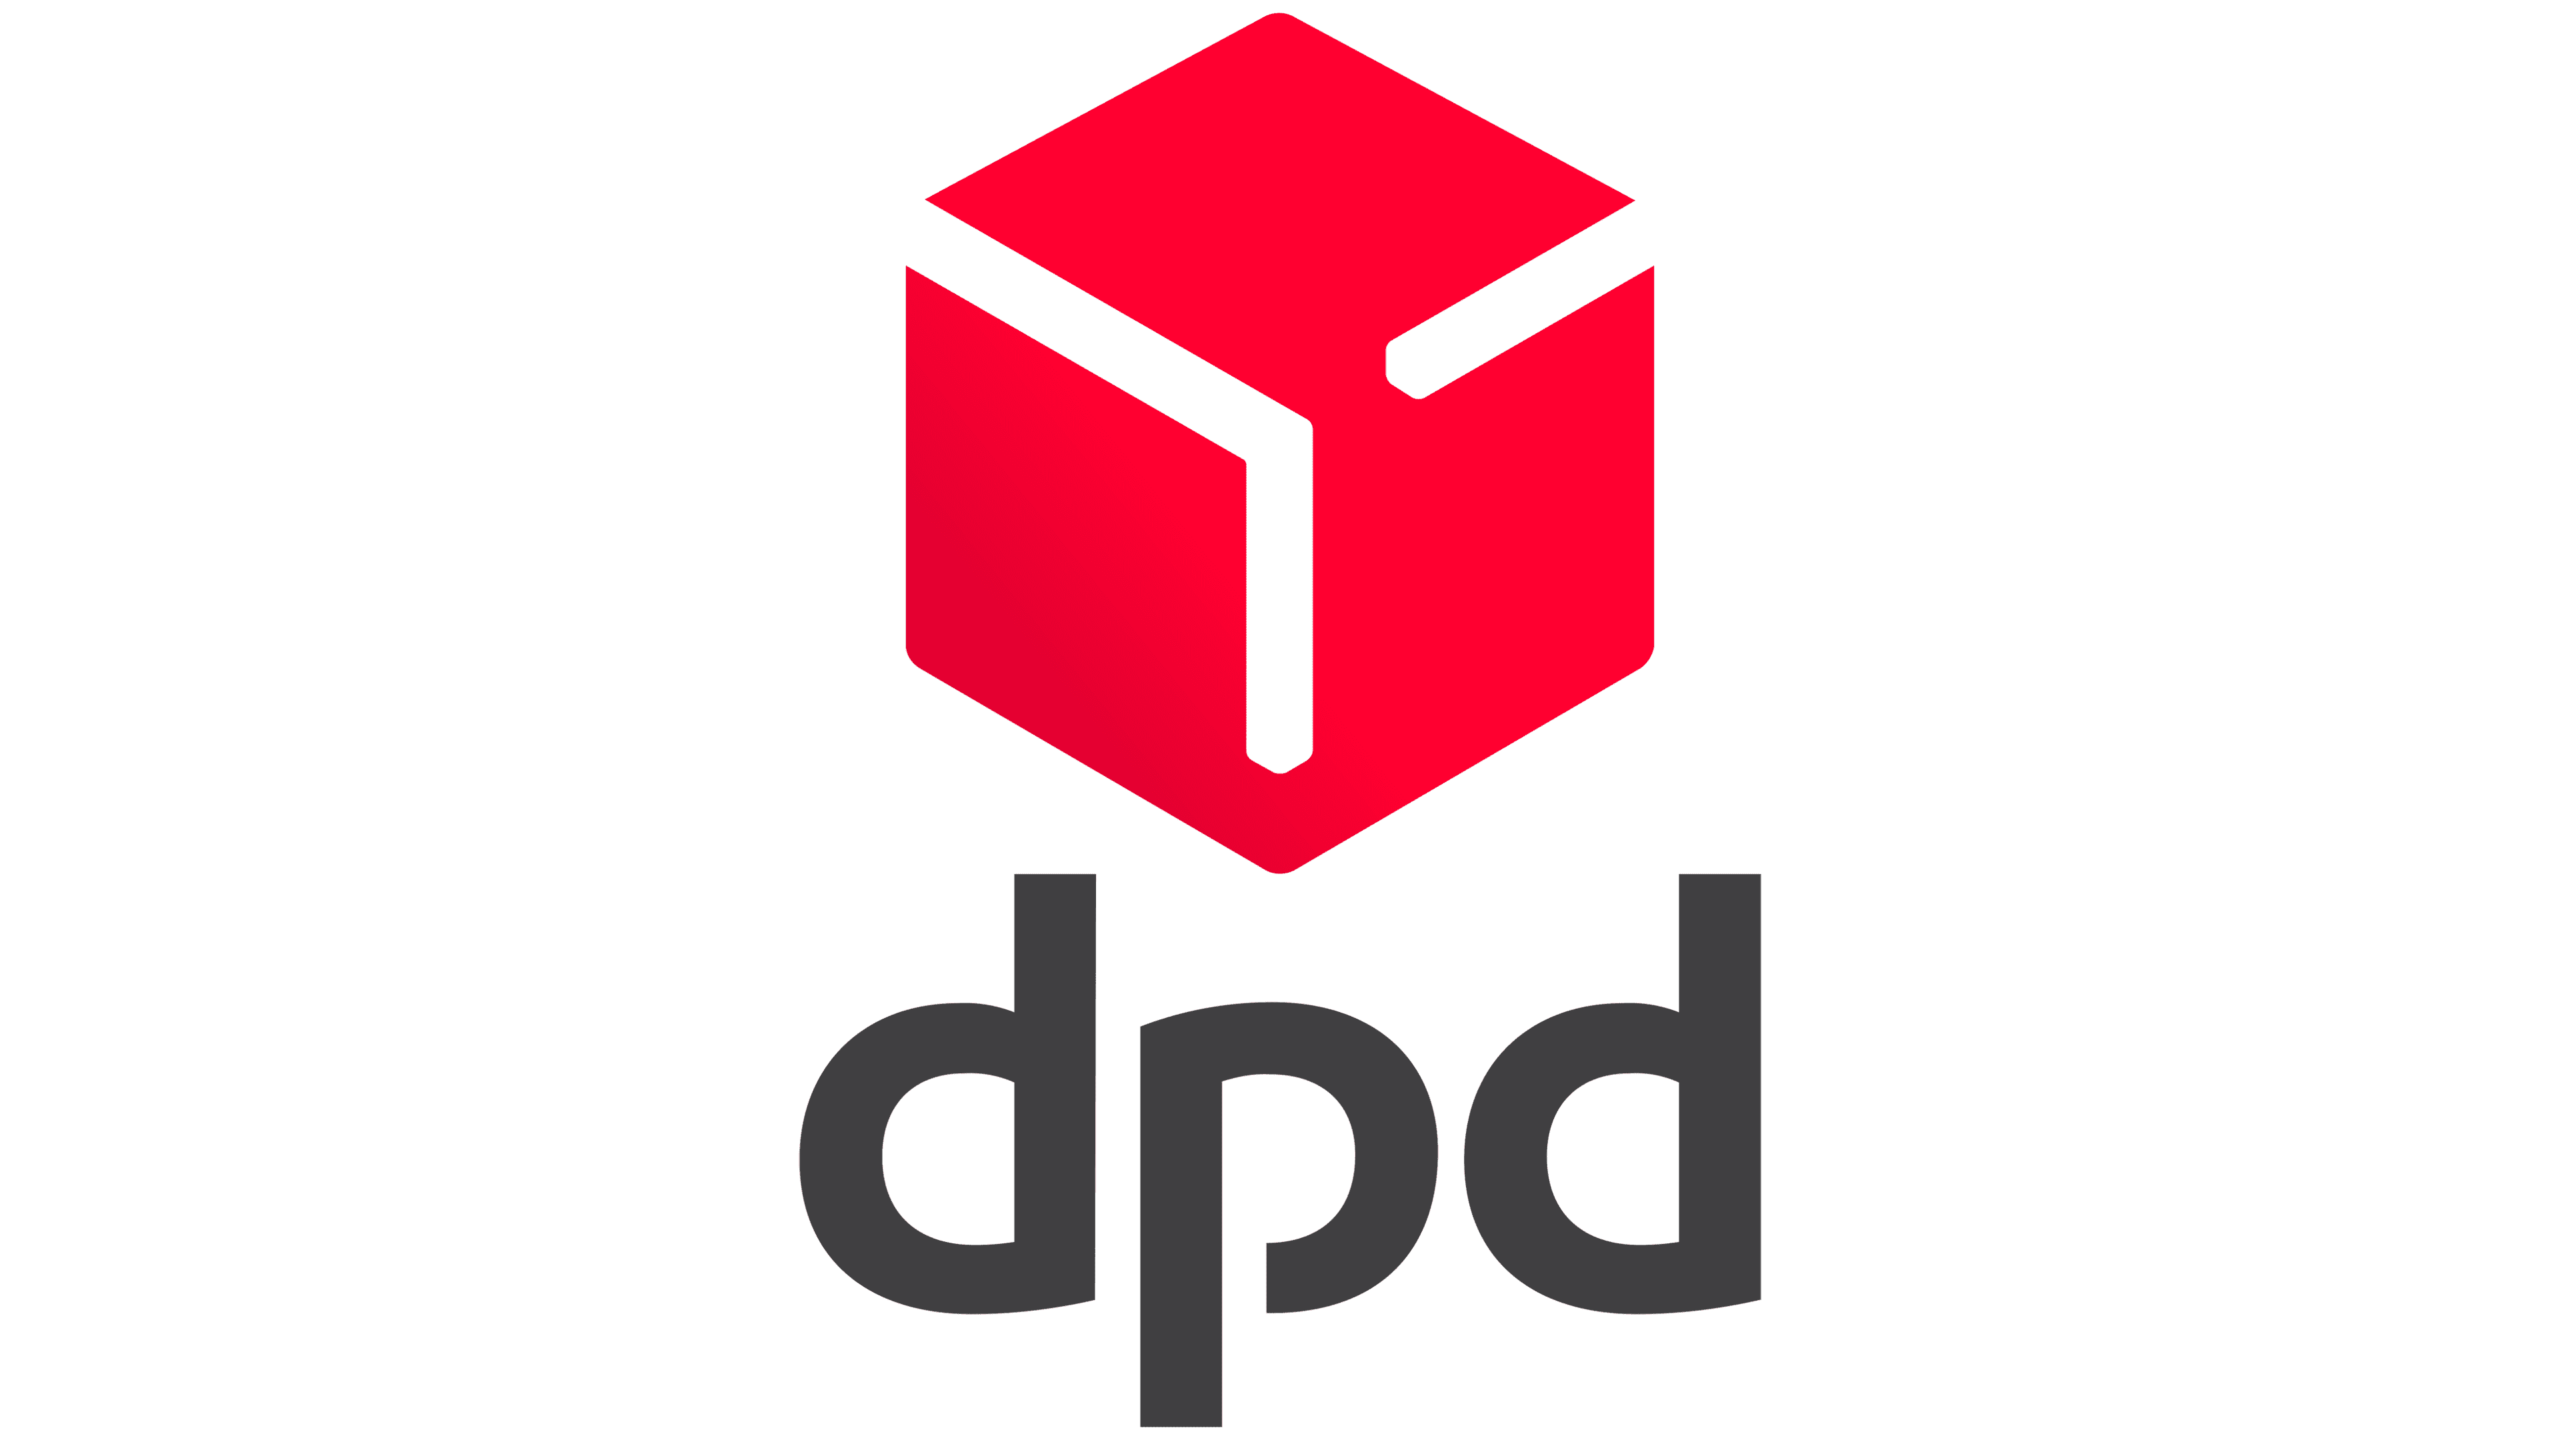 DPD Emblem